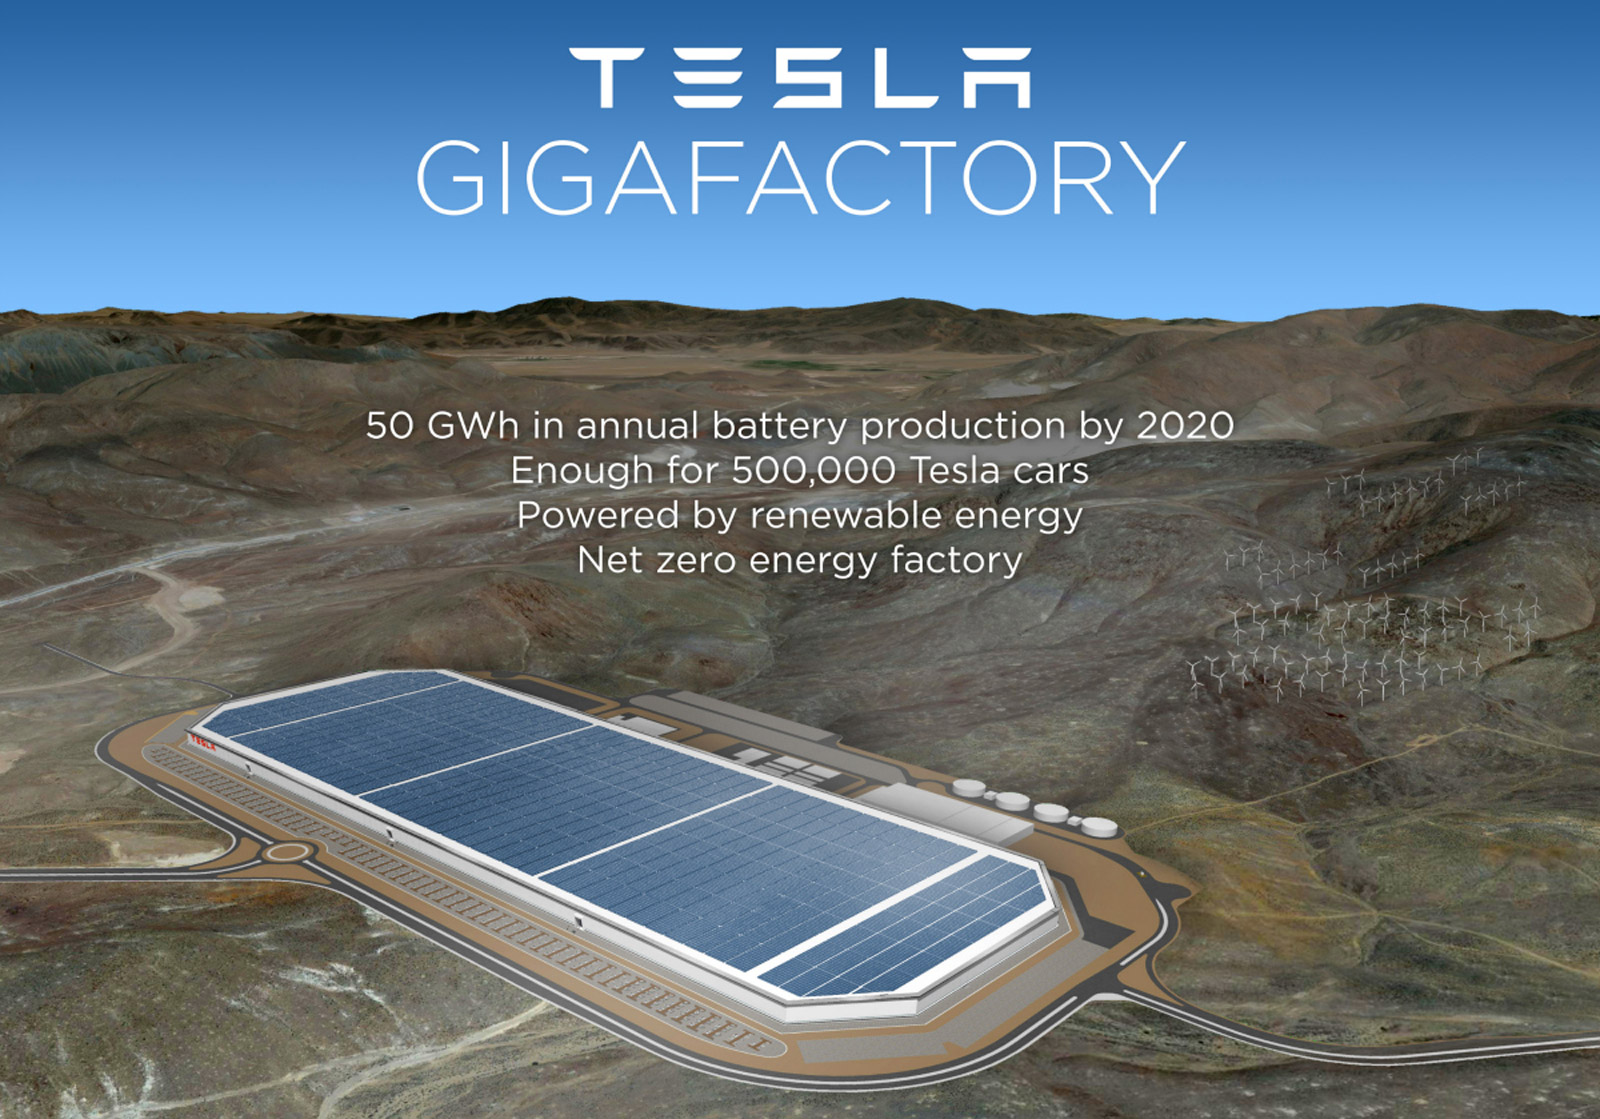 What Tesla's "Gigafactory" will look like. Tesla